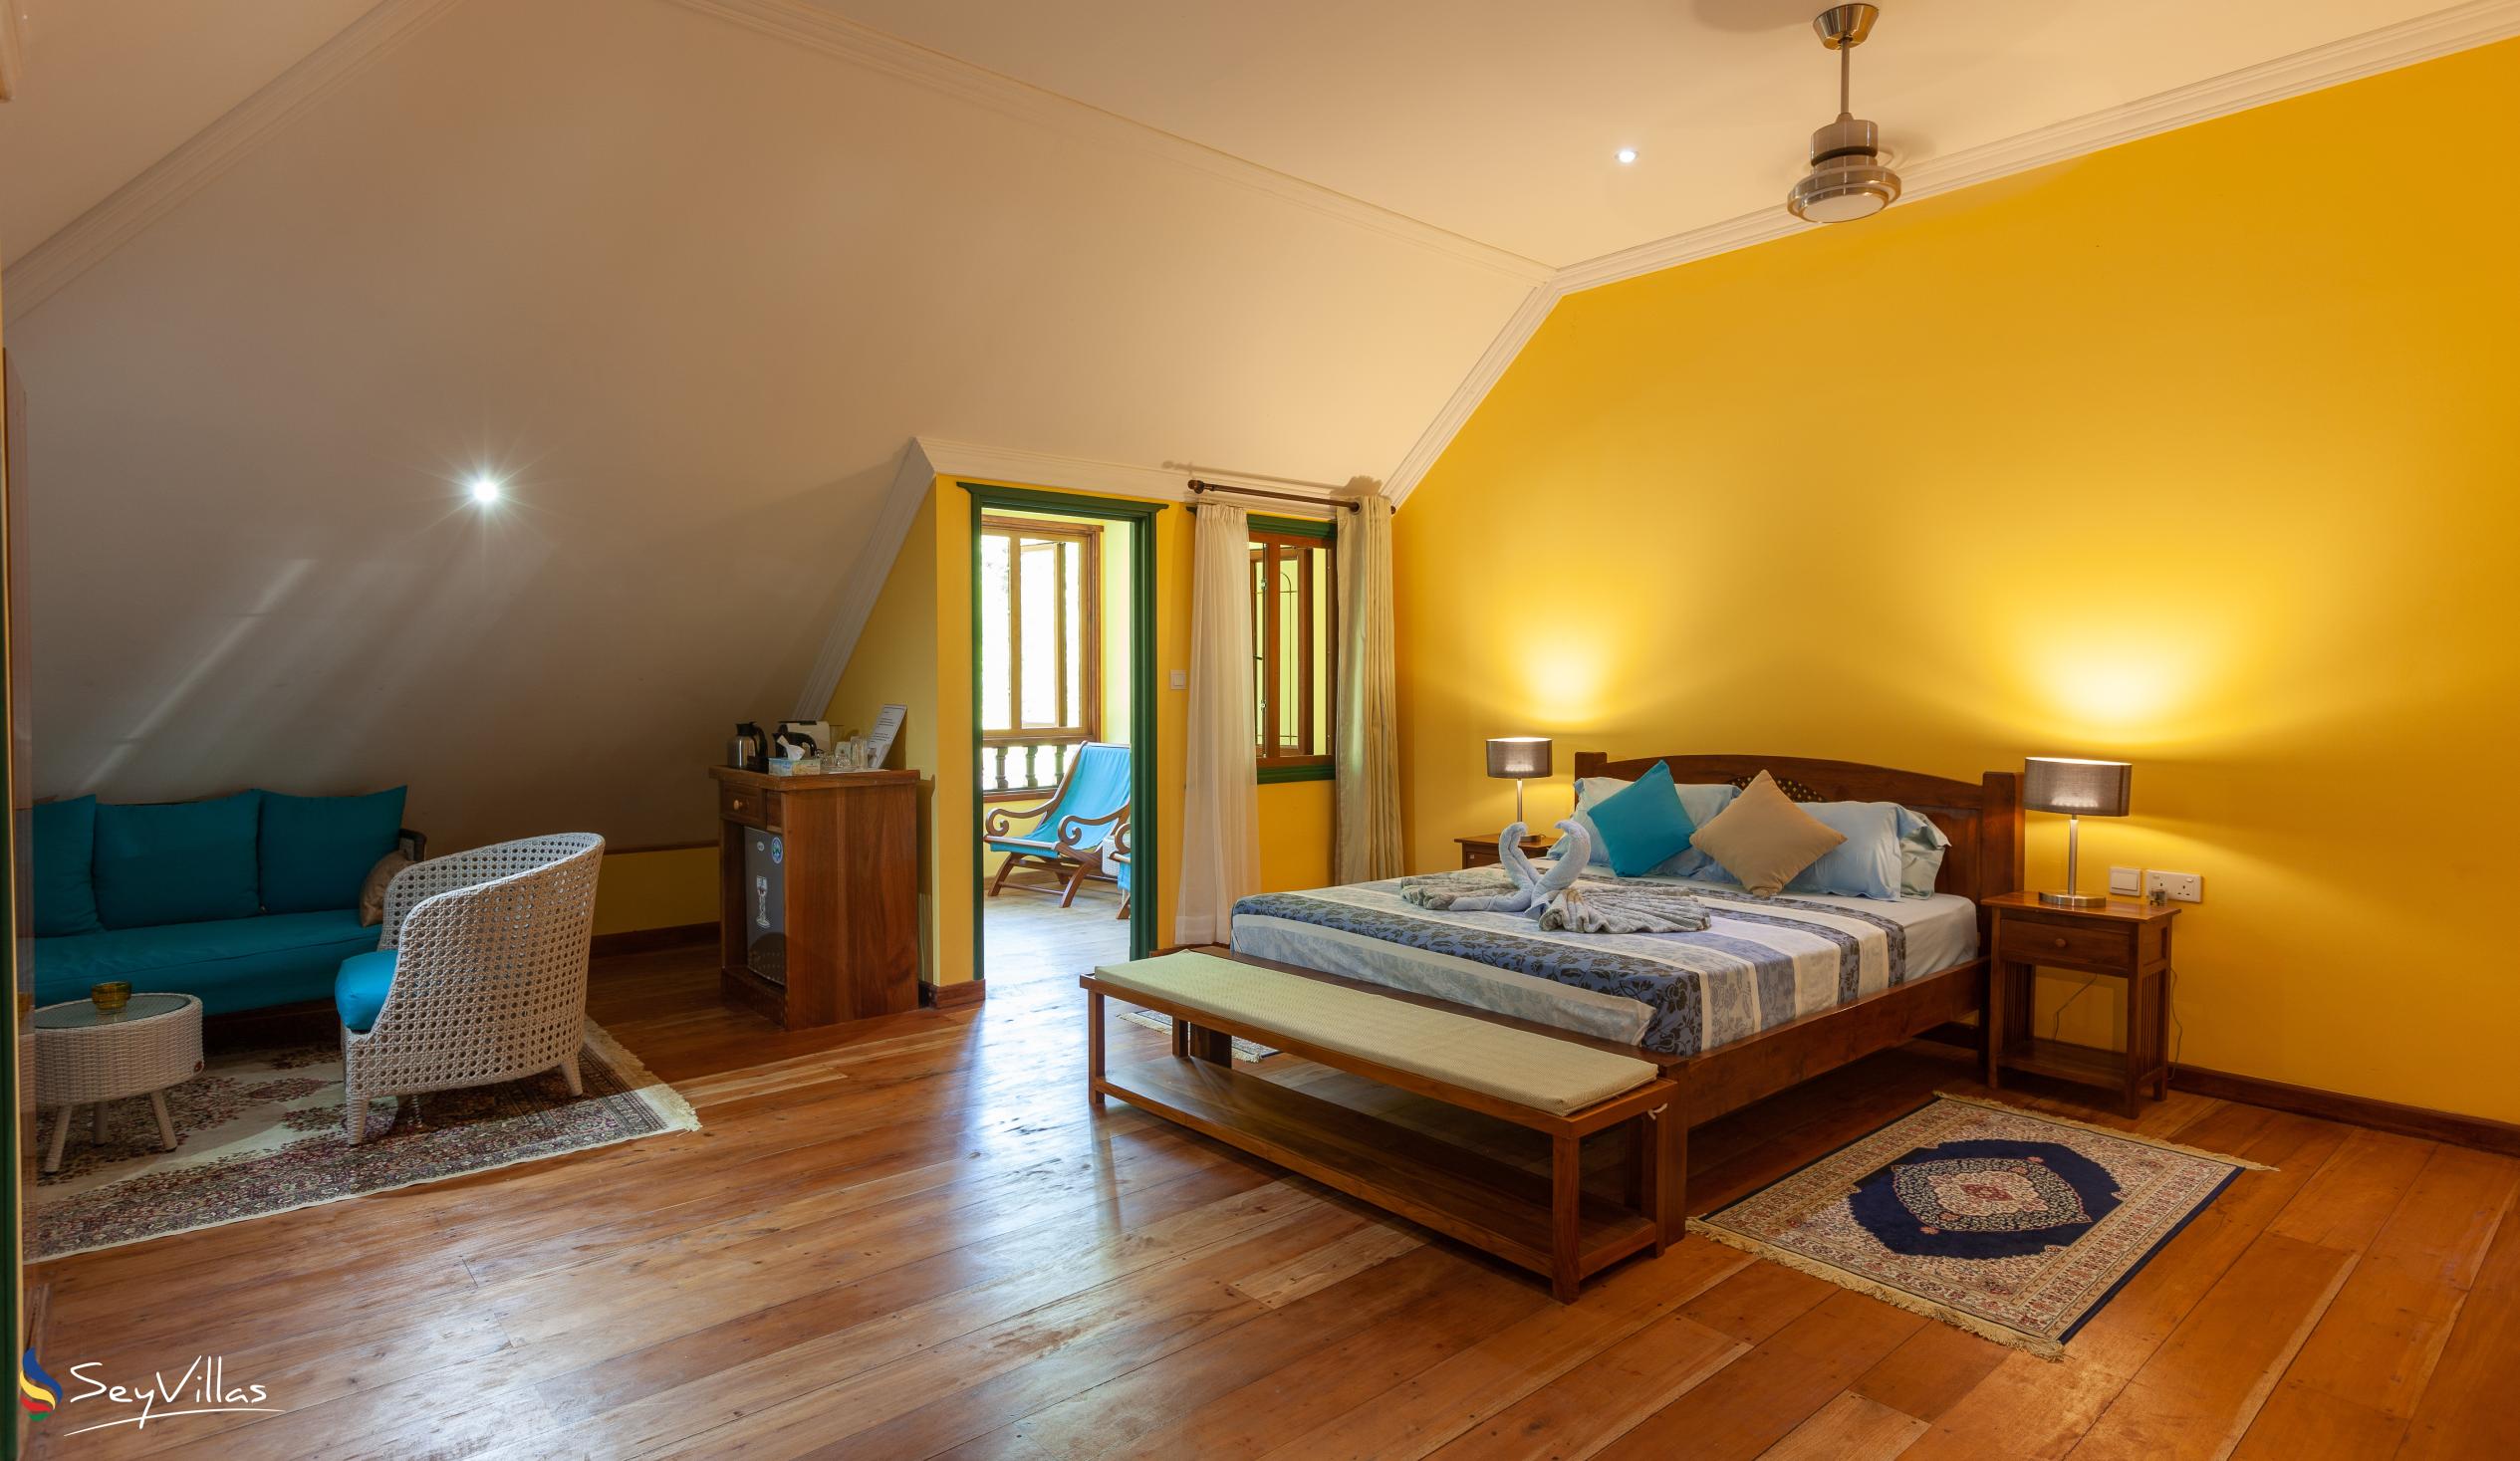 Photo 58: Pension Michel - Villa Roche Bois - Family Room - La Digue (Seychelles)